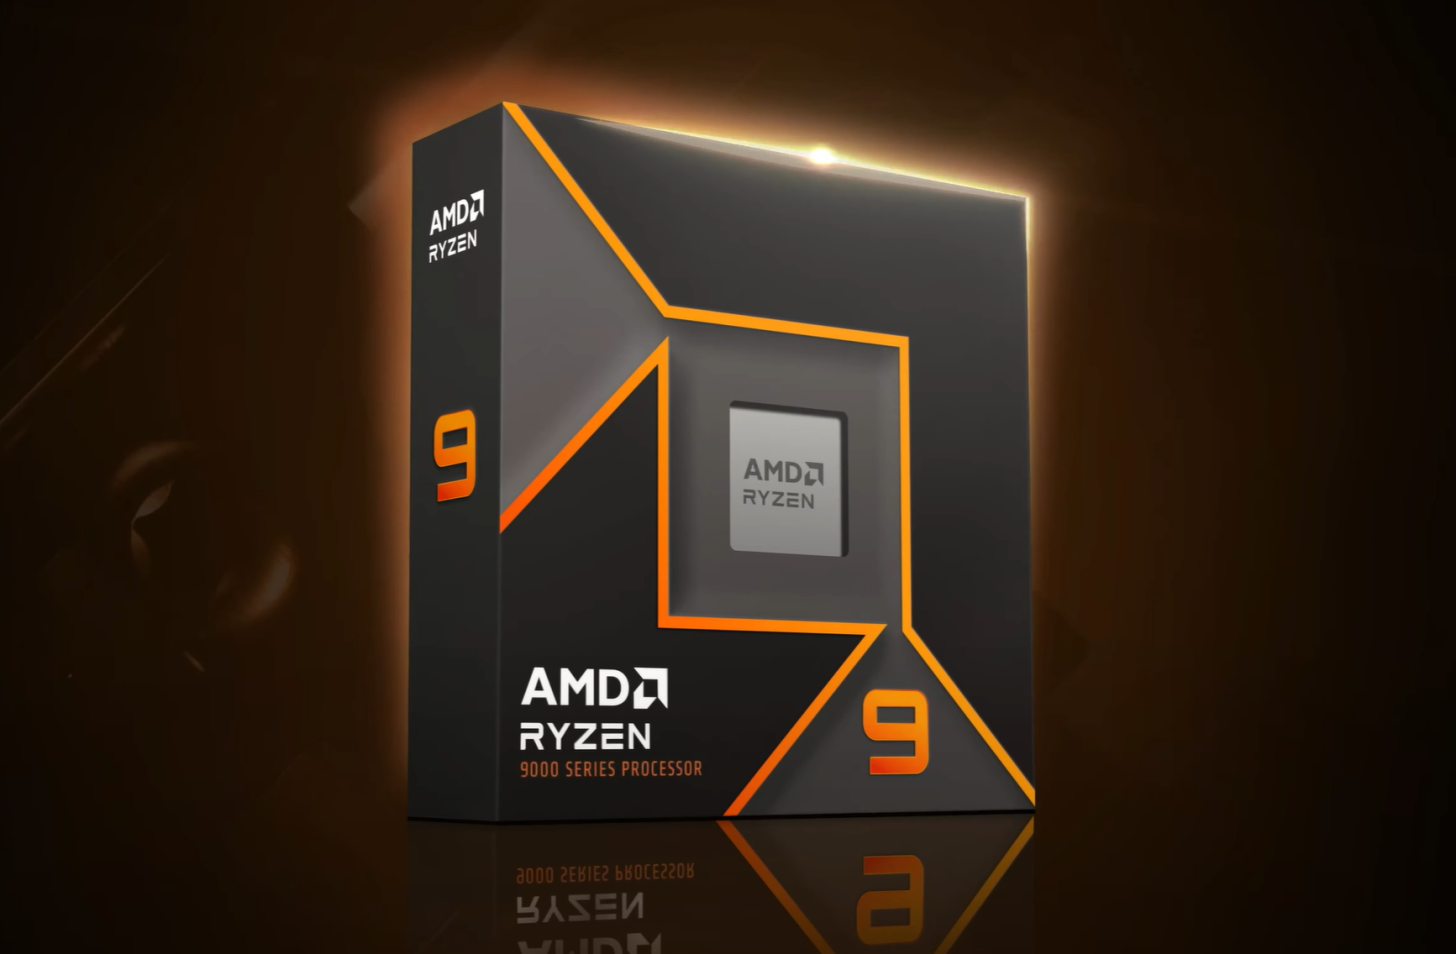 AMD Ryzen 9 9900X “Zen 5” được trình diễn qua bài kiểm tra hiệu năng trong game Avatar Frontier of Pandora, sản phẩm hàng đầu Ryzen 9 9950X đã được ph